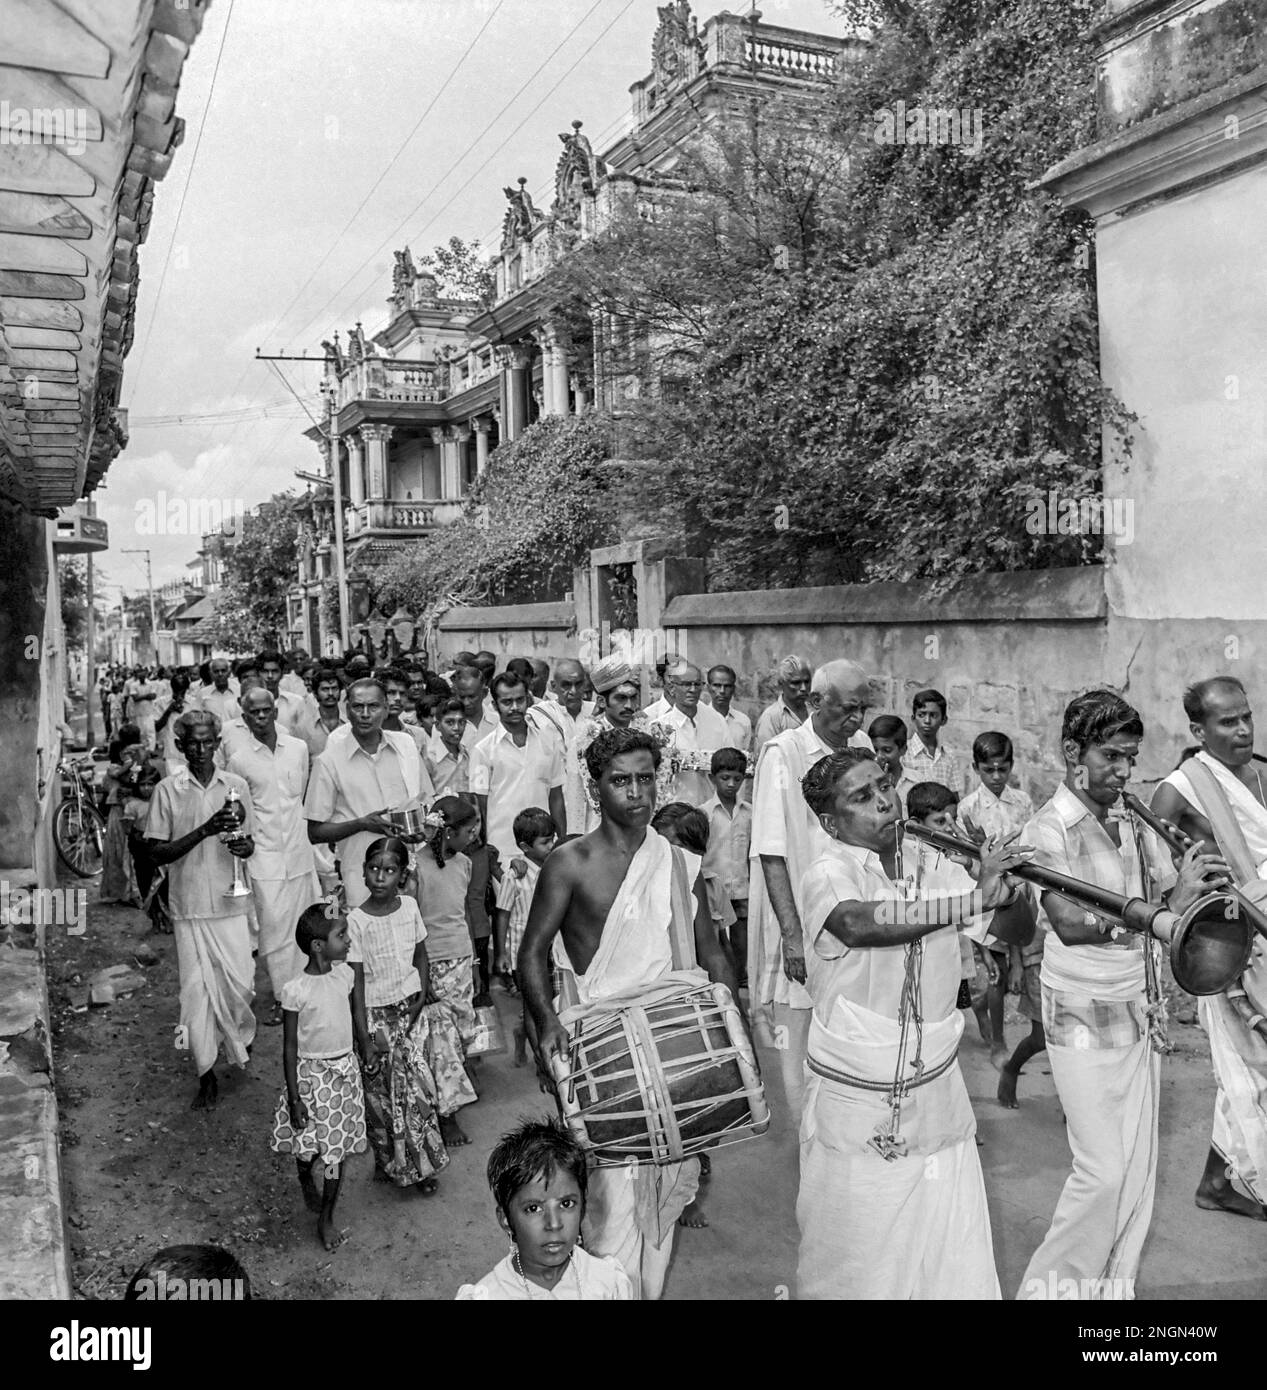 Nattukottai Chettiar o Nagarathar matrimonio, Tamil Nadu, India. Fotografato nel 1 novembre 1976 Foto Stock